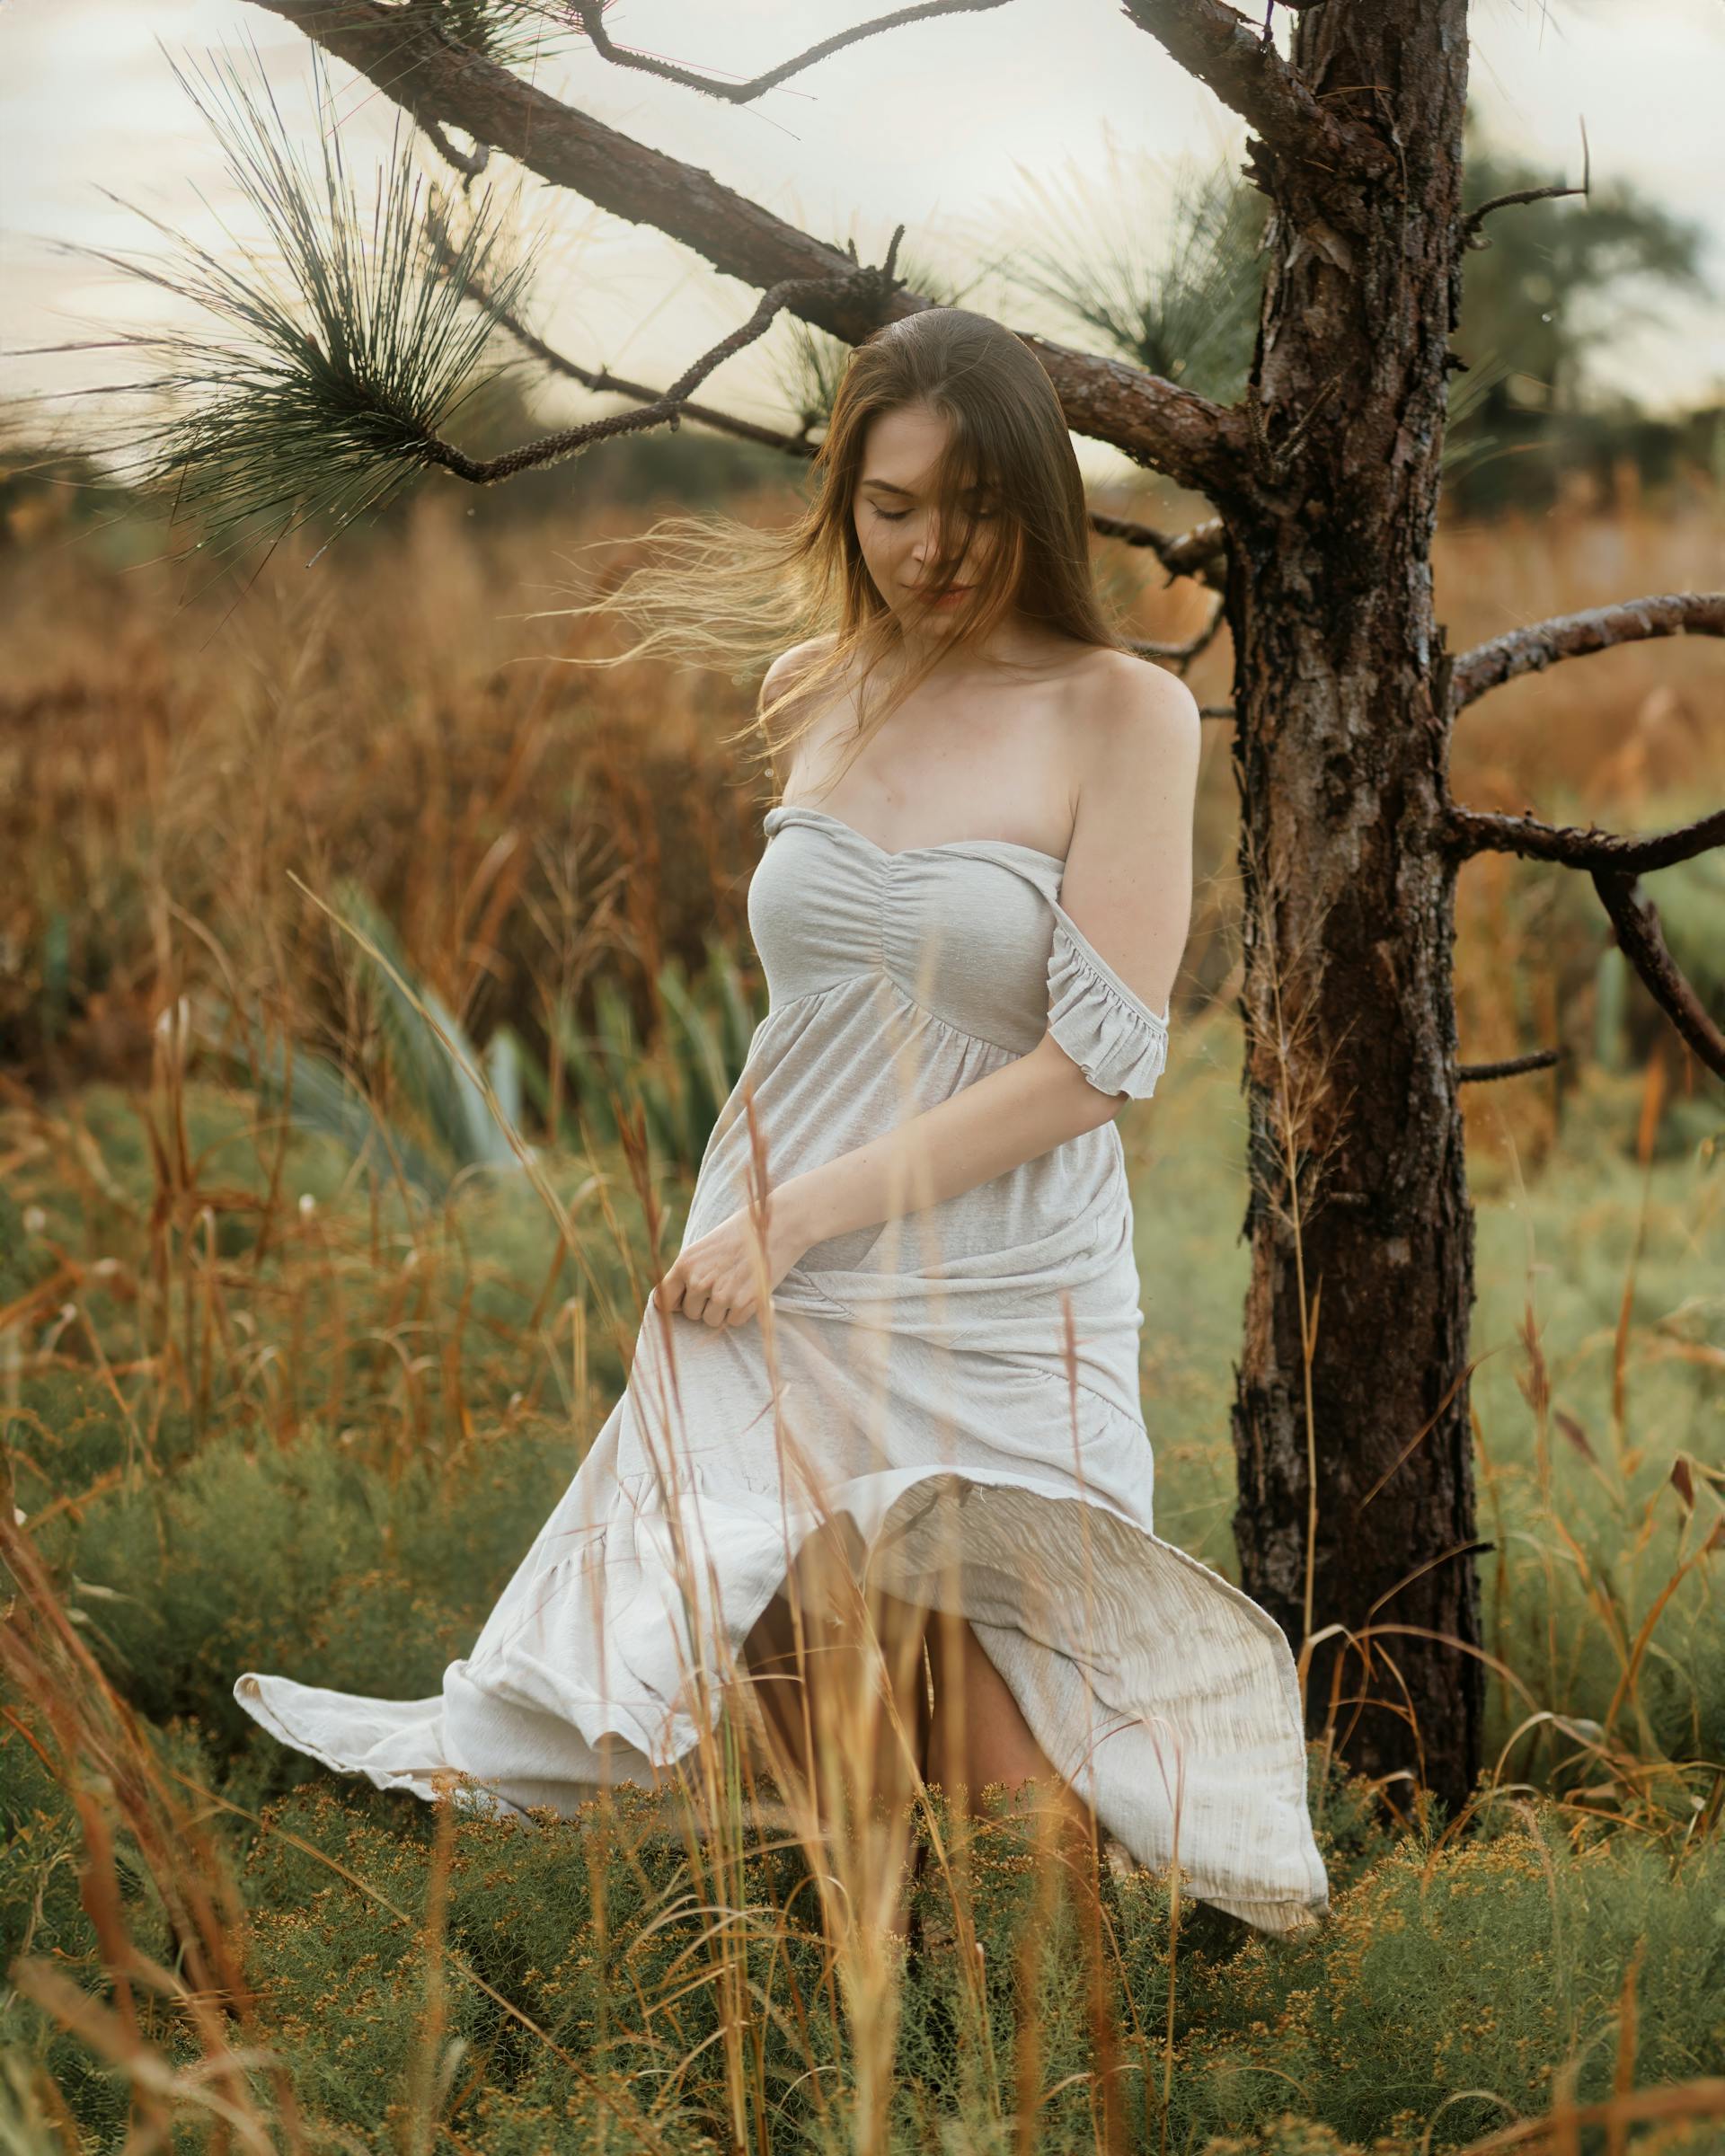 Joven con un vestido blanco en un campo | Fuente: Pexels